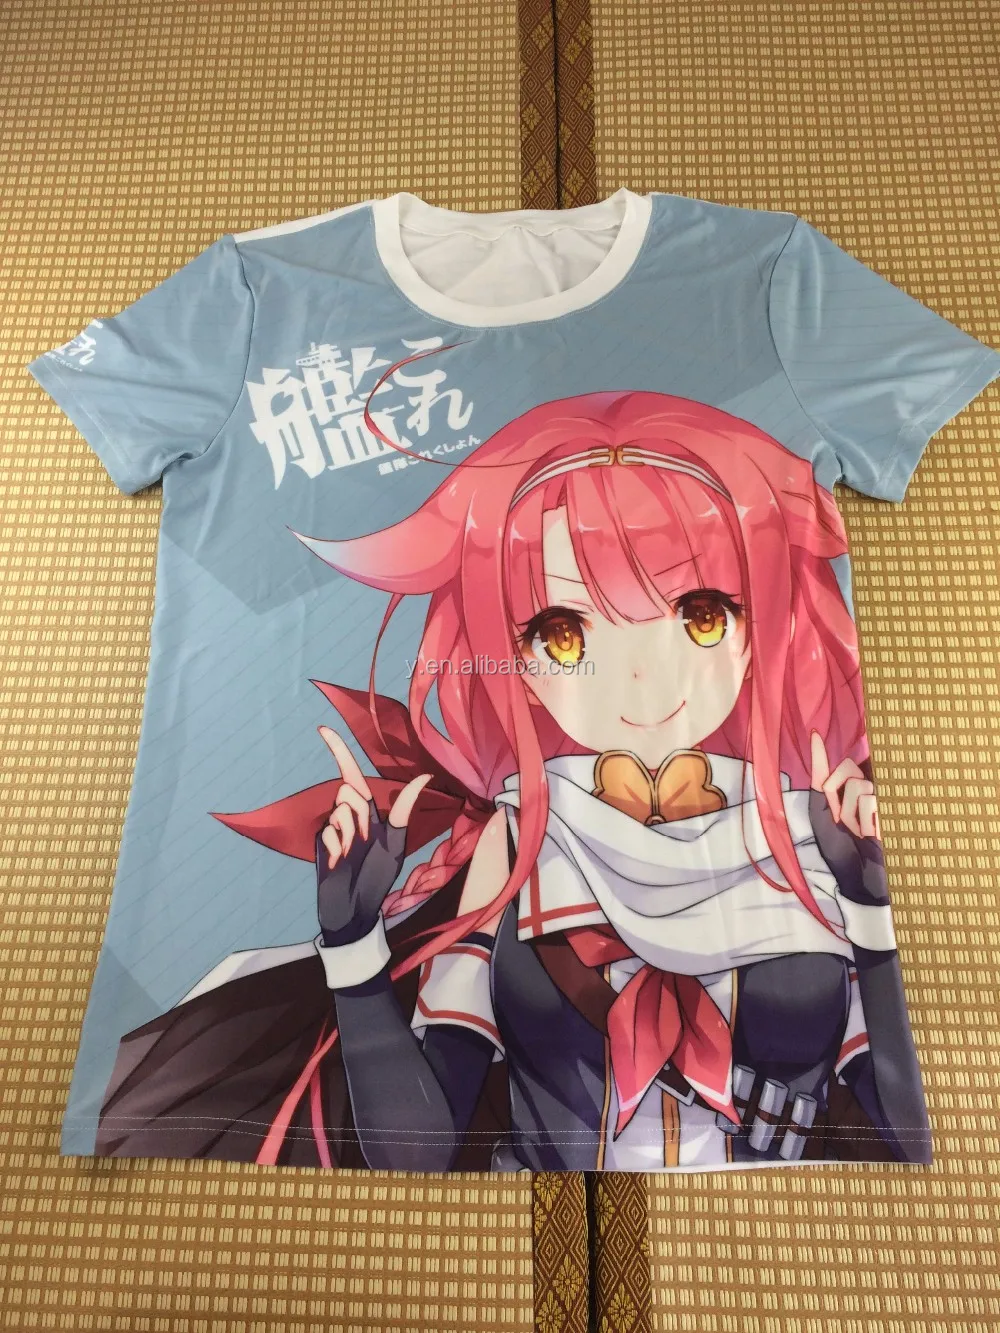 Anime Tシャツkantai Collectionカスタムプリントtシャツ Buy アニメtシャツ カスタム印刷tシャツ 艦隊コレクション Product On Alibaba Com